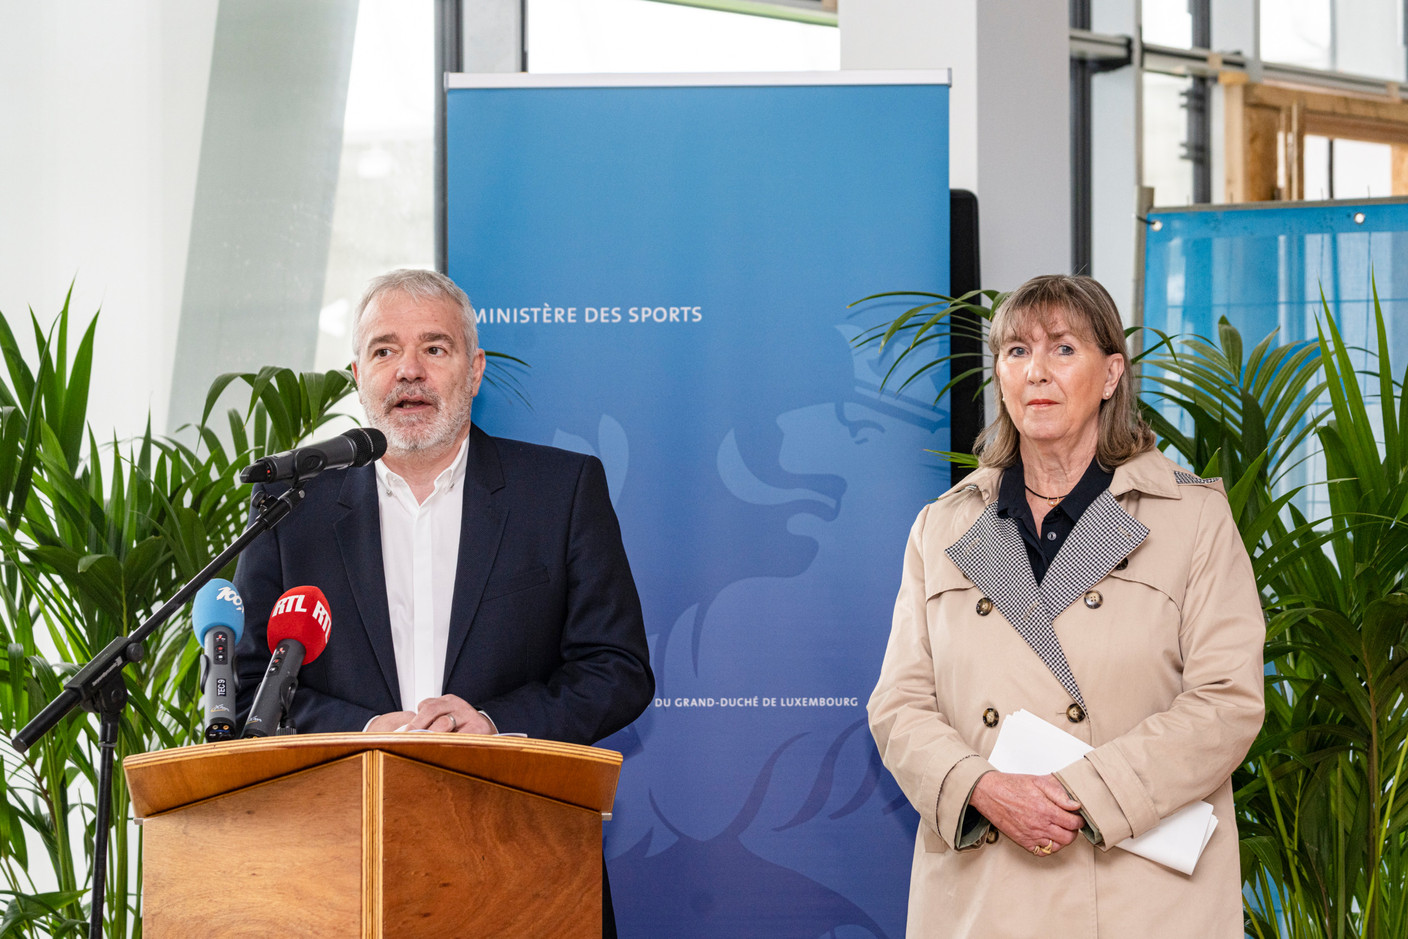 Le ministre des Sports, Dan Kersch (LSAP), et la bourgmestre de la capitale, Lydie Polfer (DP), lors de la conférence de presse sur l’avancement des travaux du nouveau stade national de football et de rugby. (Photo: Caroline Martin)